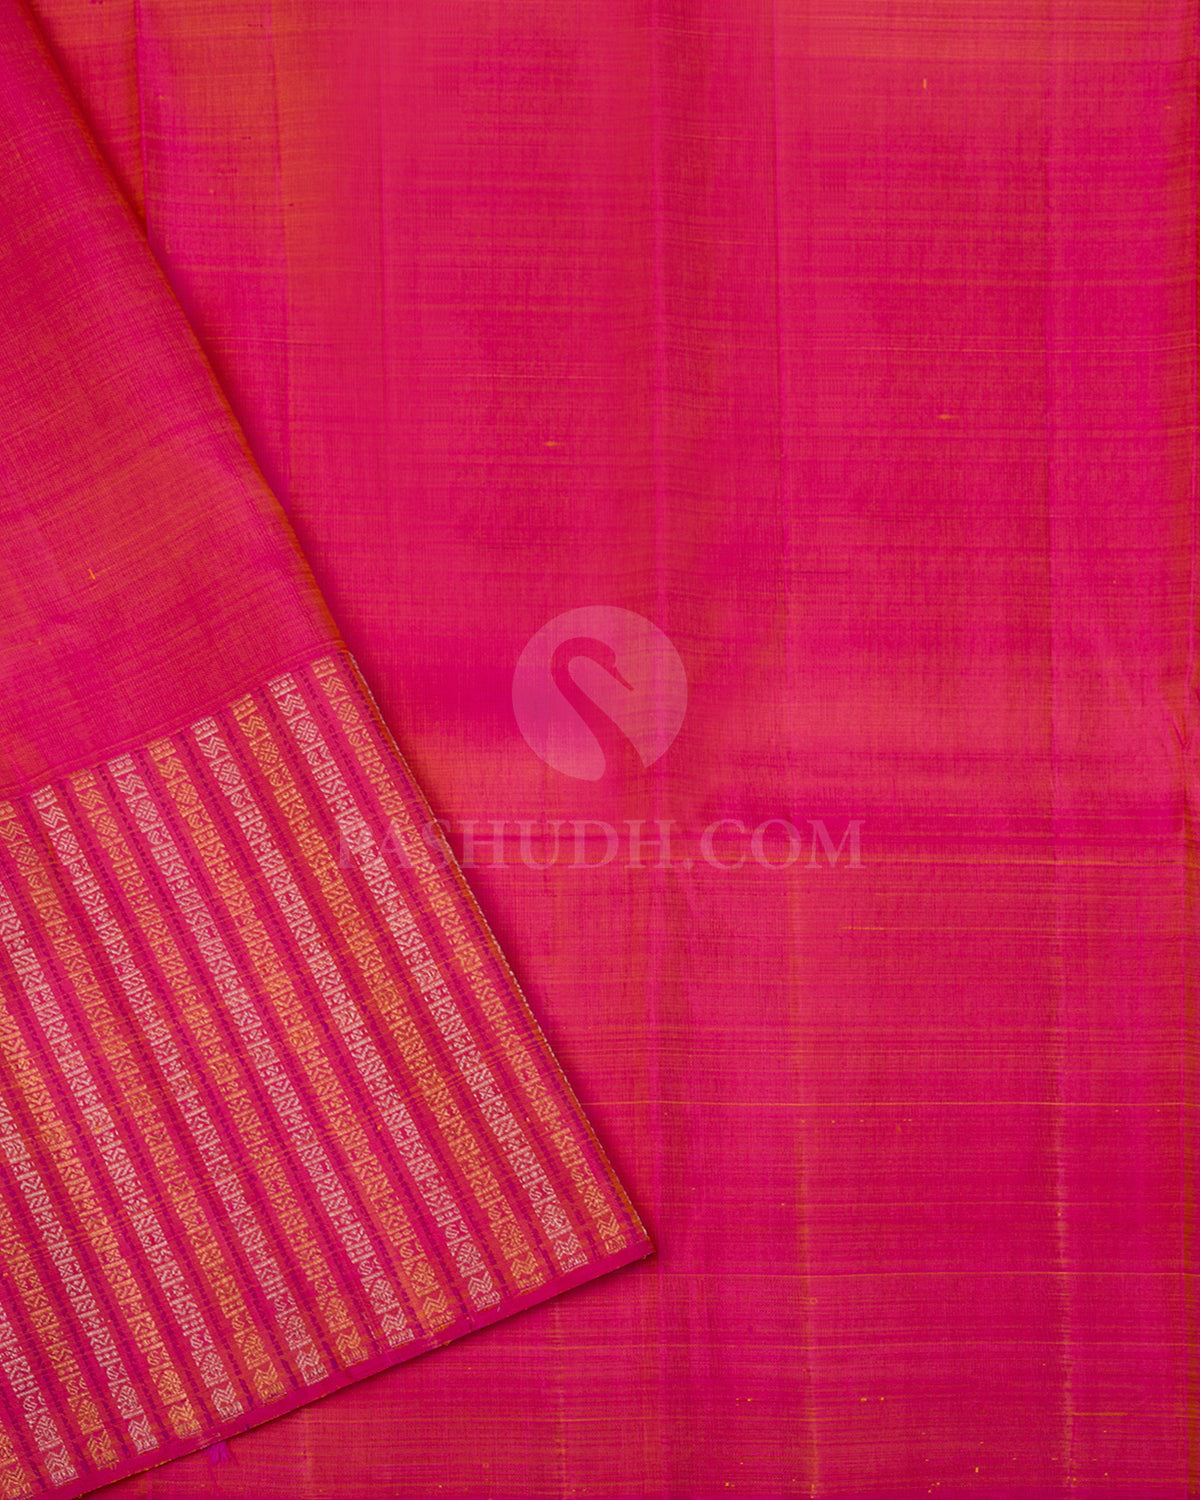 Orange & Watermelon Pink Kanjivaram Silk Saree - S990 - View 3